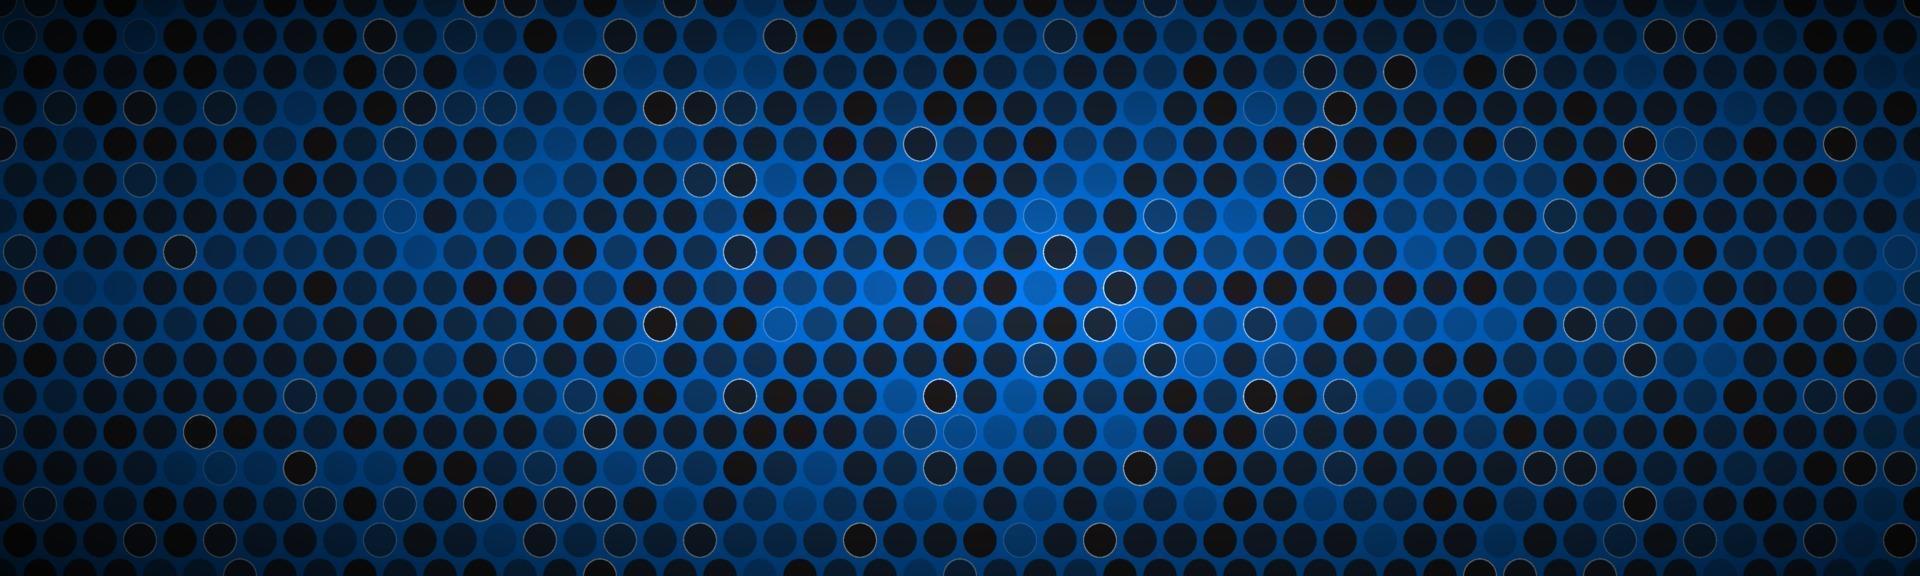 blauwe breedbeeldbanner met cirkels vector